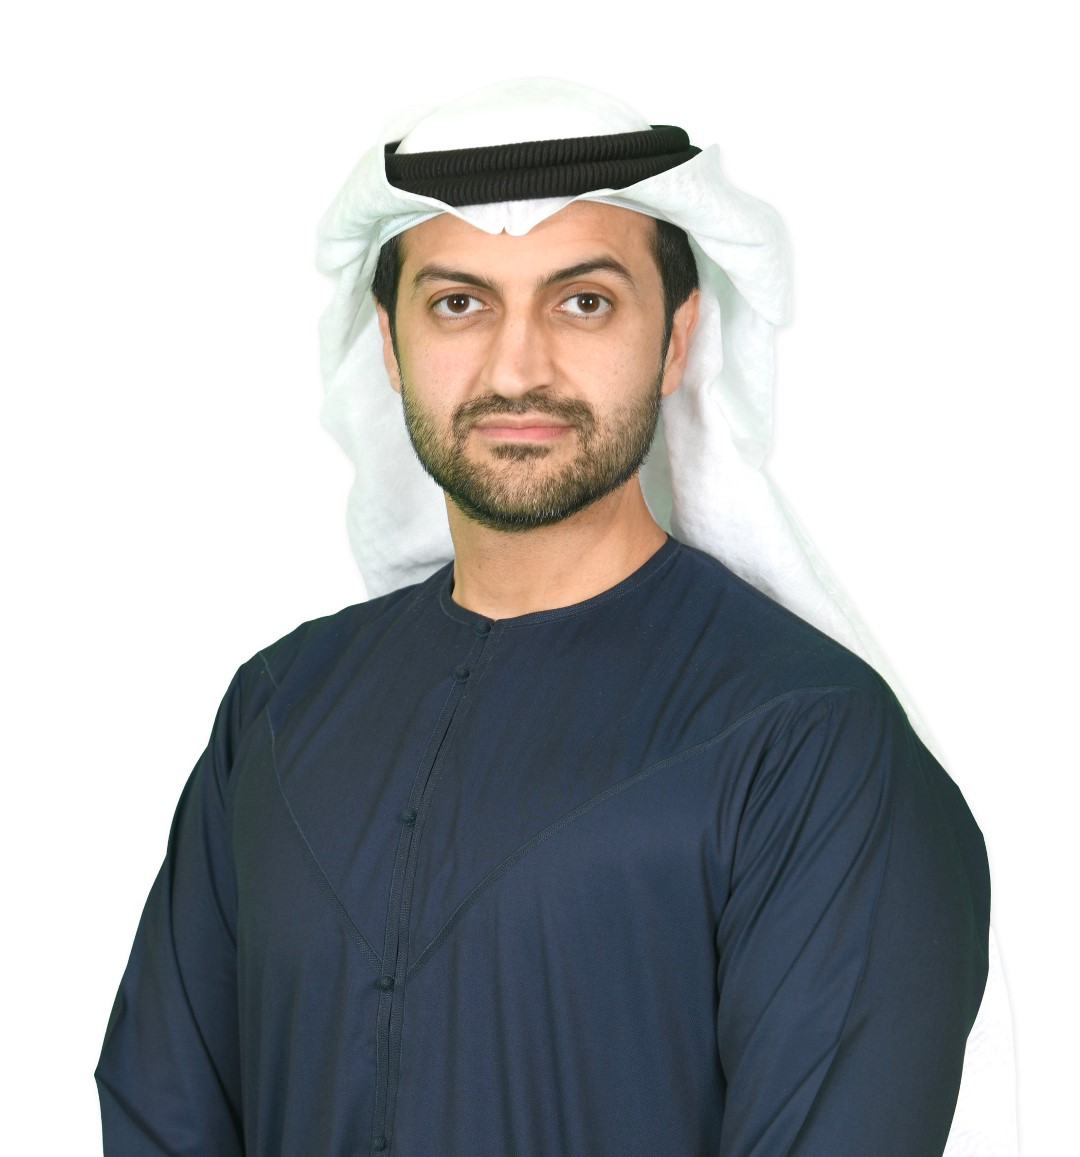 وكالة أنباء الإمارات - ائتلاف استثماري بقيادة "شعاع كابيتال" ينجح في شراء ديون مجموعة "ستانفورد مارين" البالغة 1,13 مليار درهم - اخبار الامارات ENN